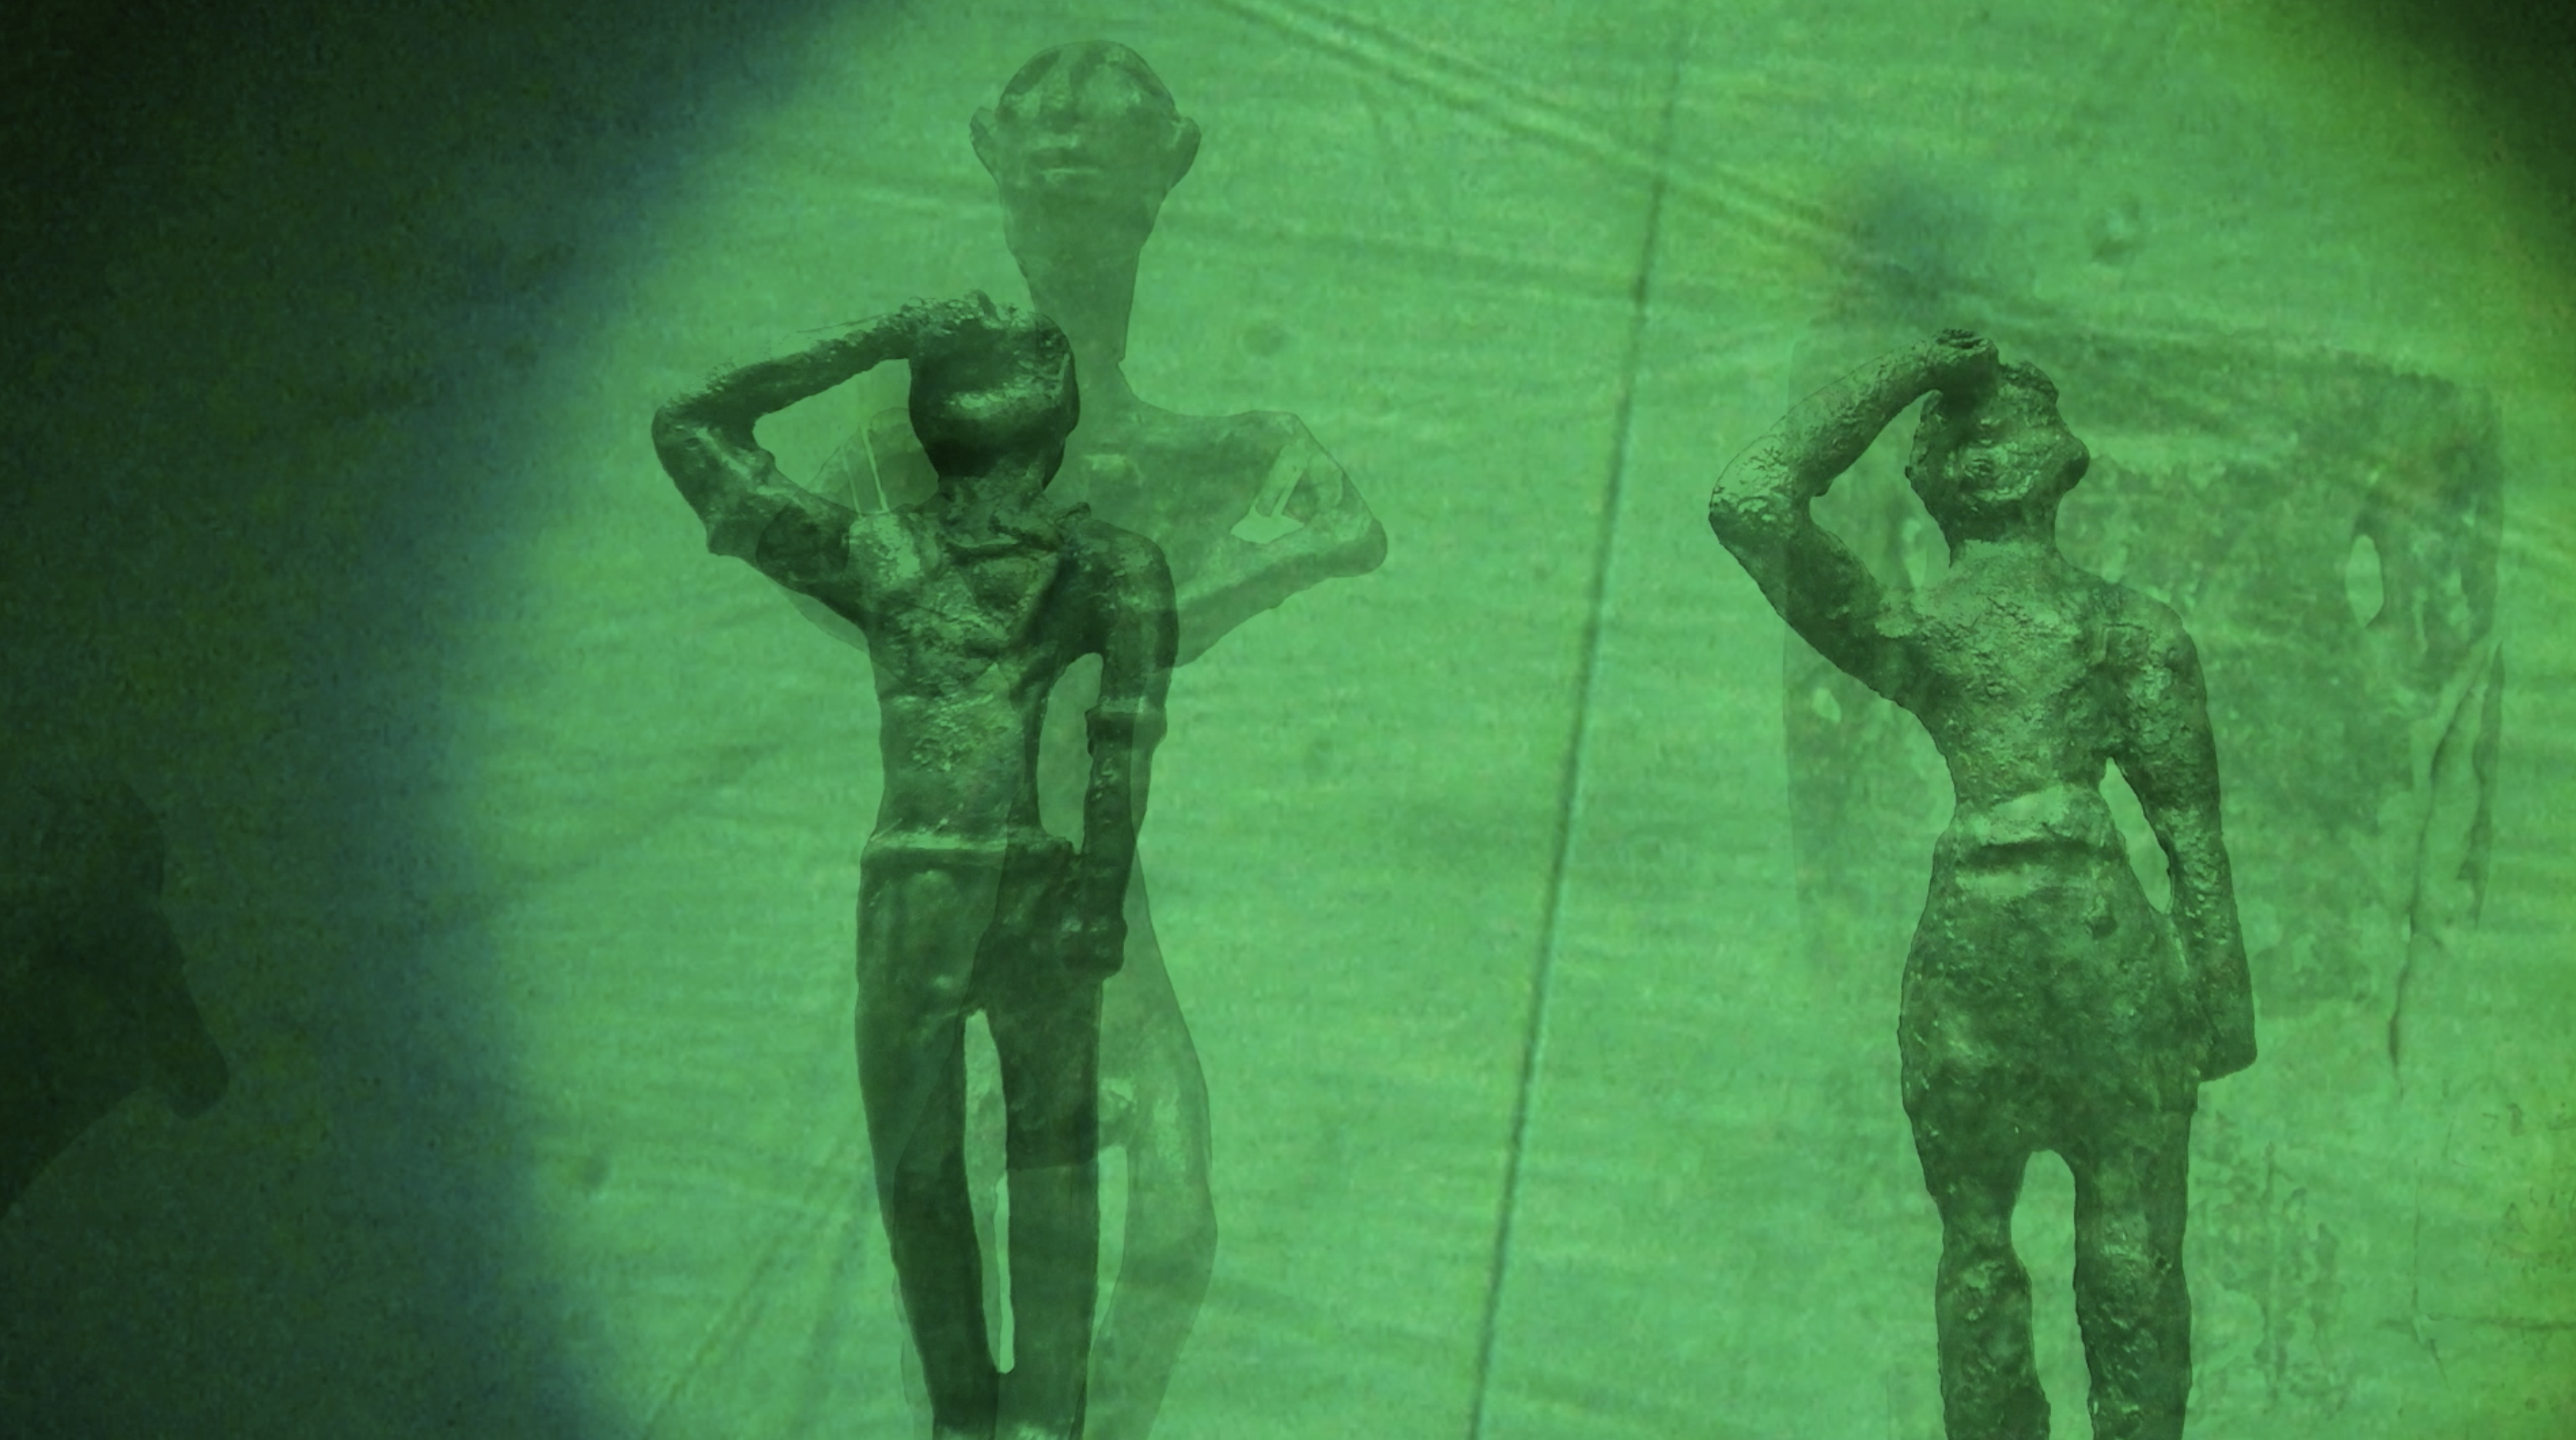 Two Minoan statues in a green haze